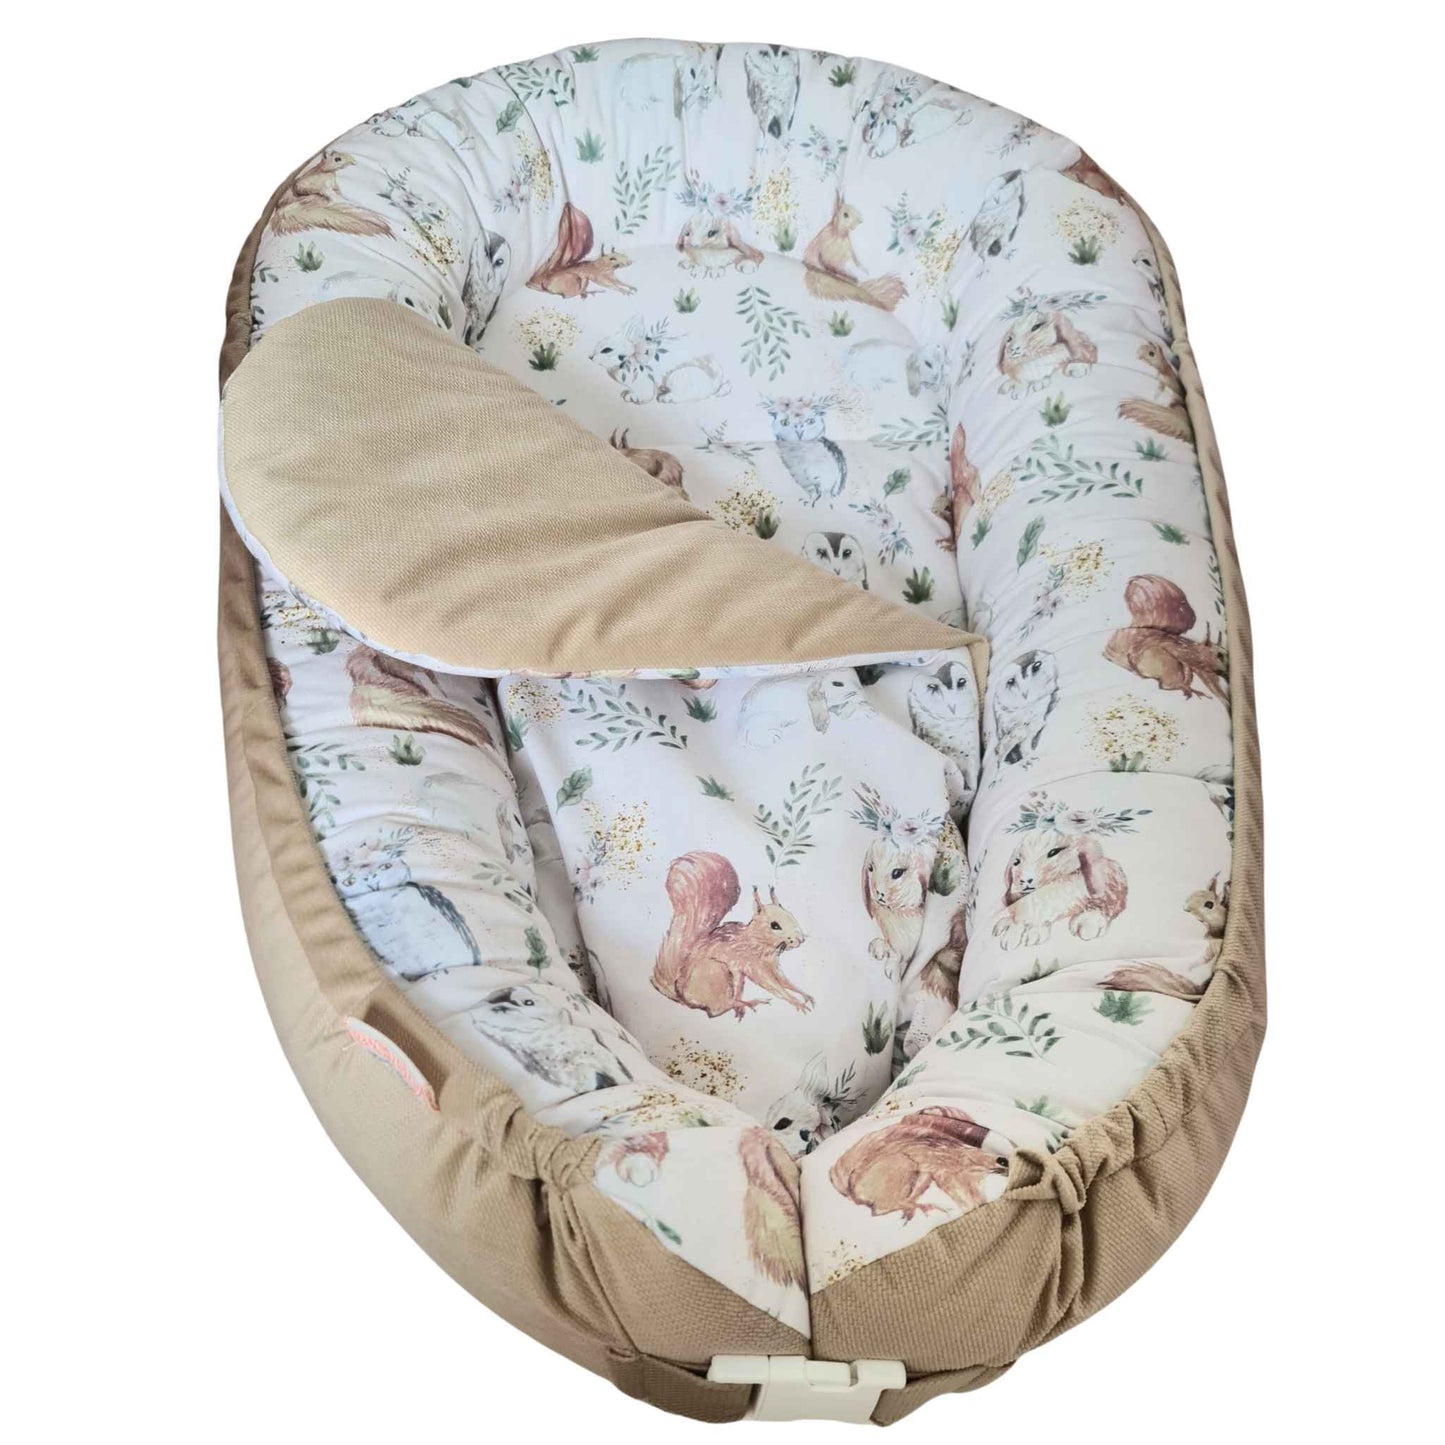 Cuddle Up - Cozy Baby Nest 0+ Months Whimsical Woodland Wonderland